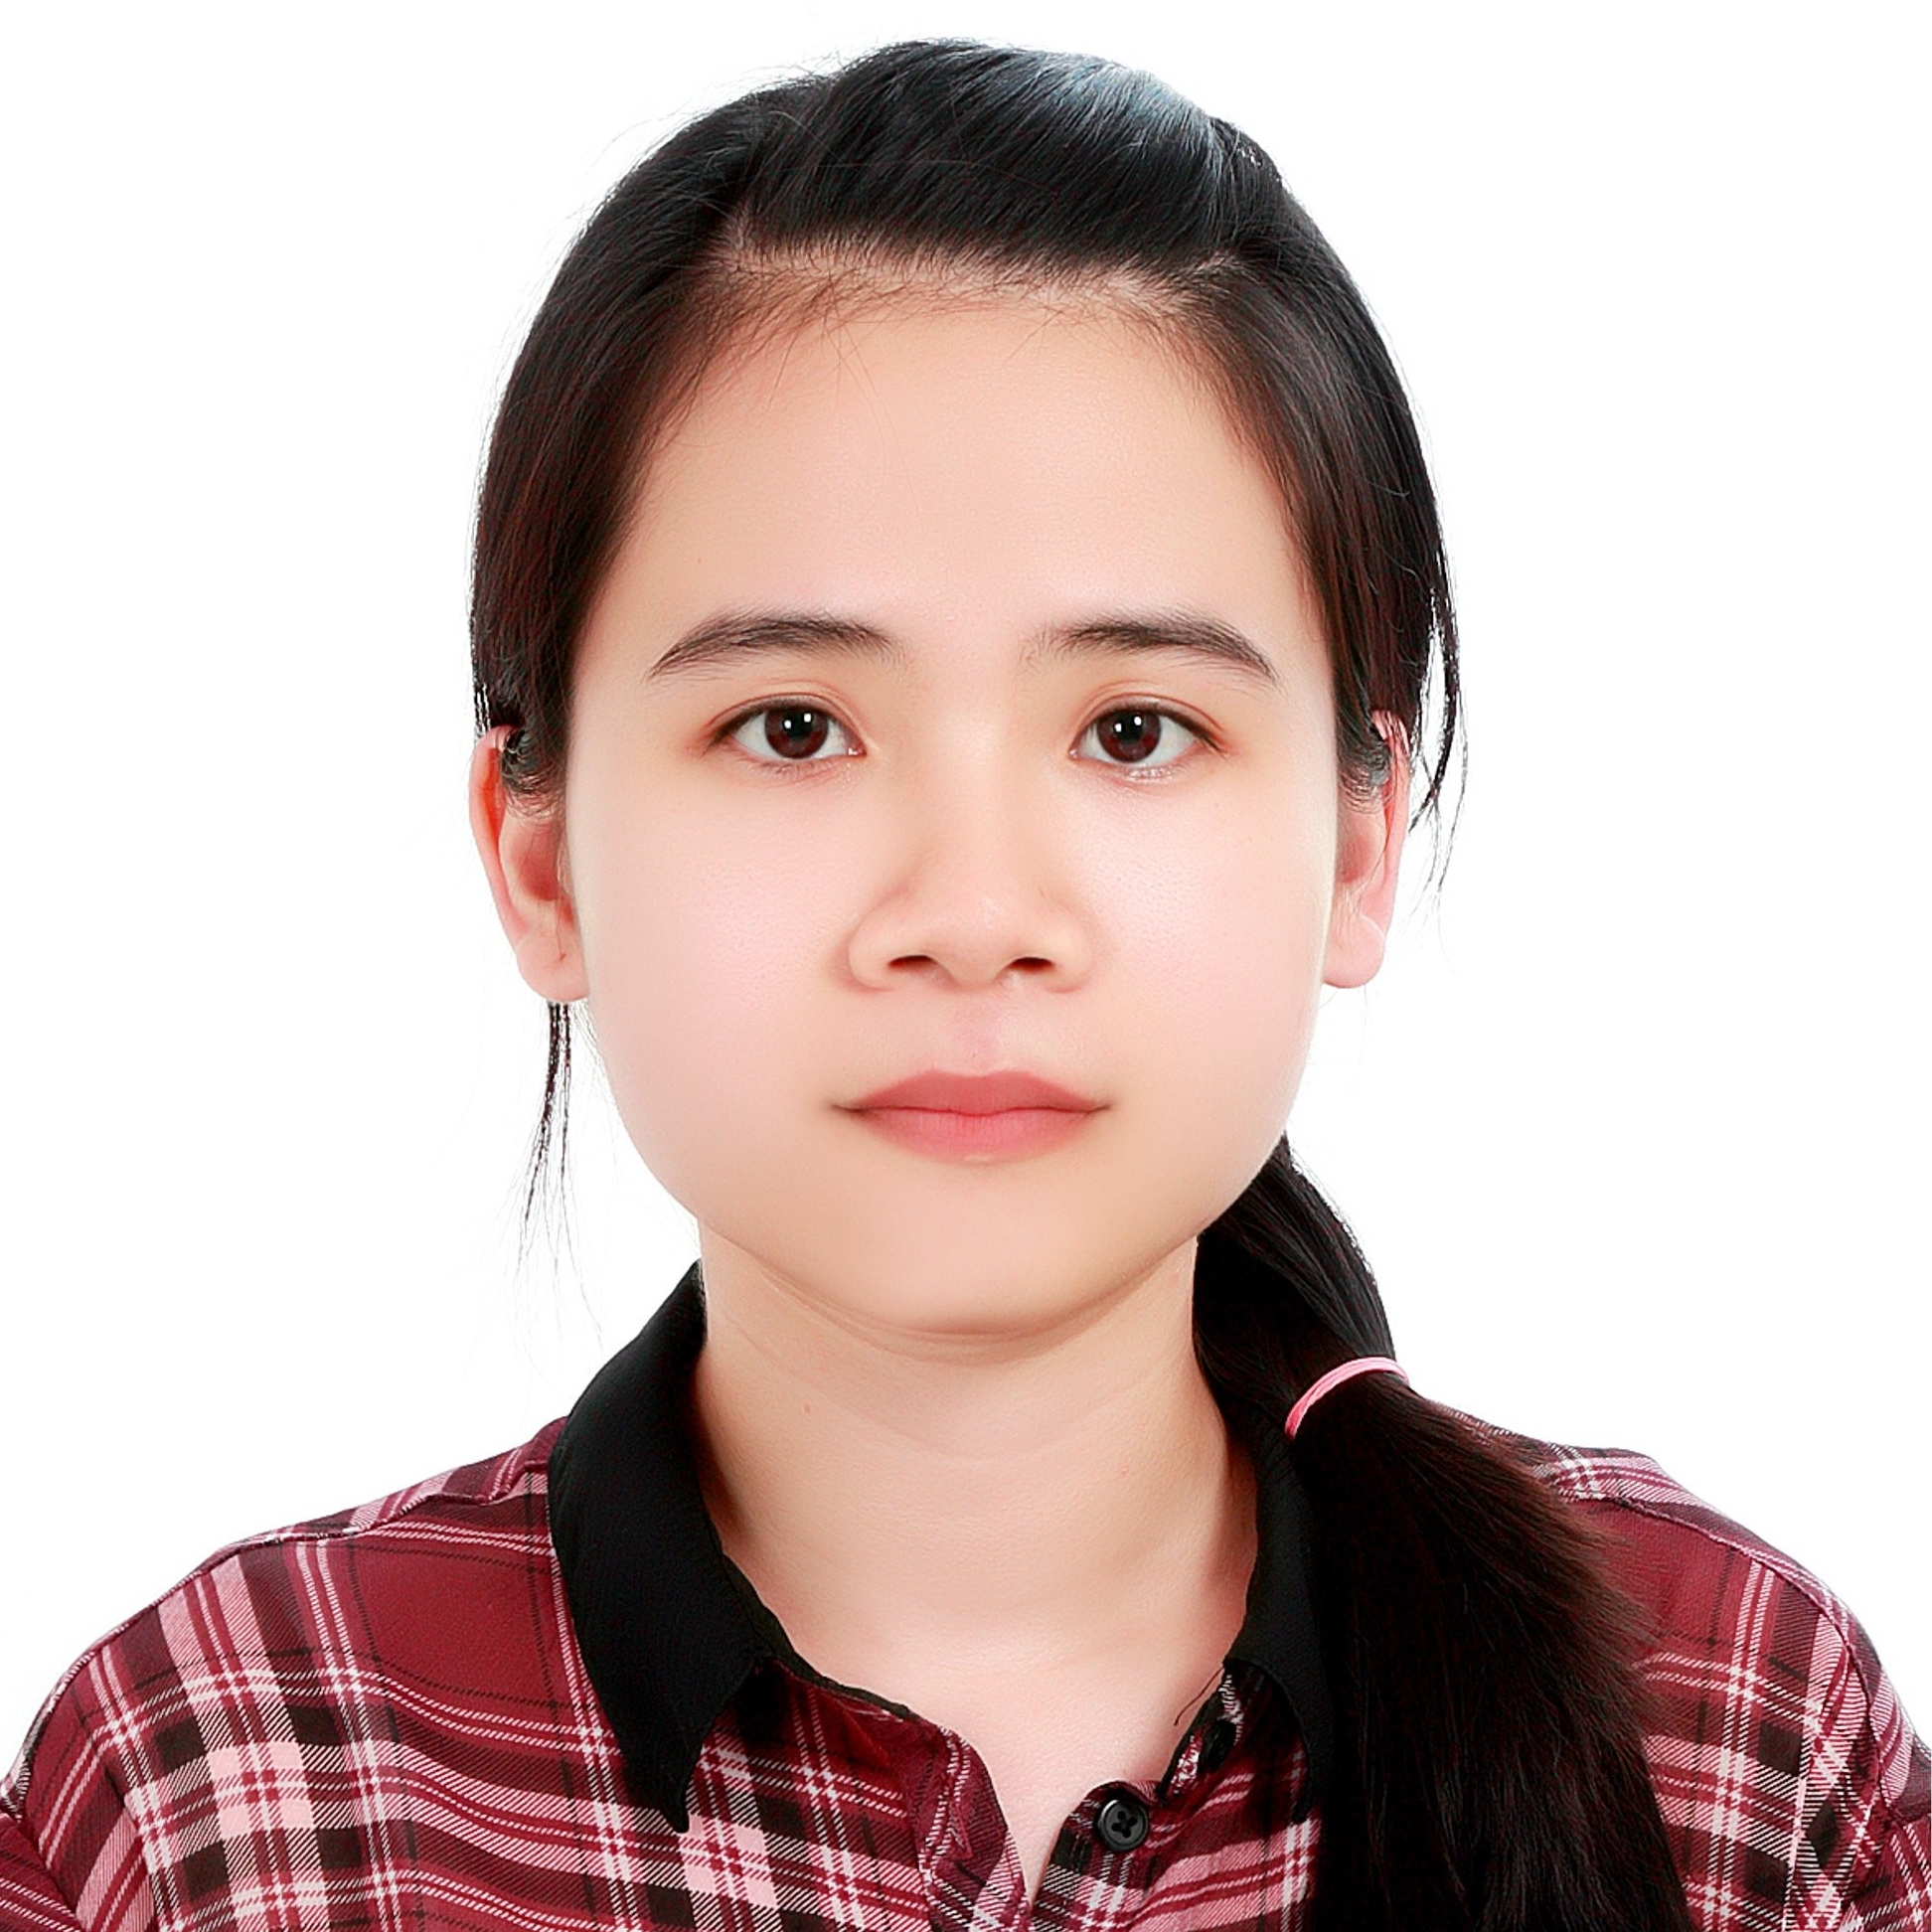 Dr. NGUYEN NGOC PHUONG THAO